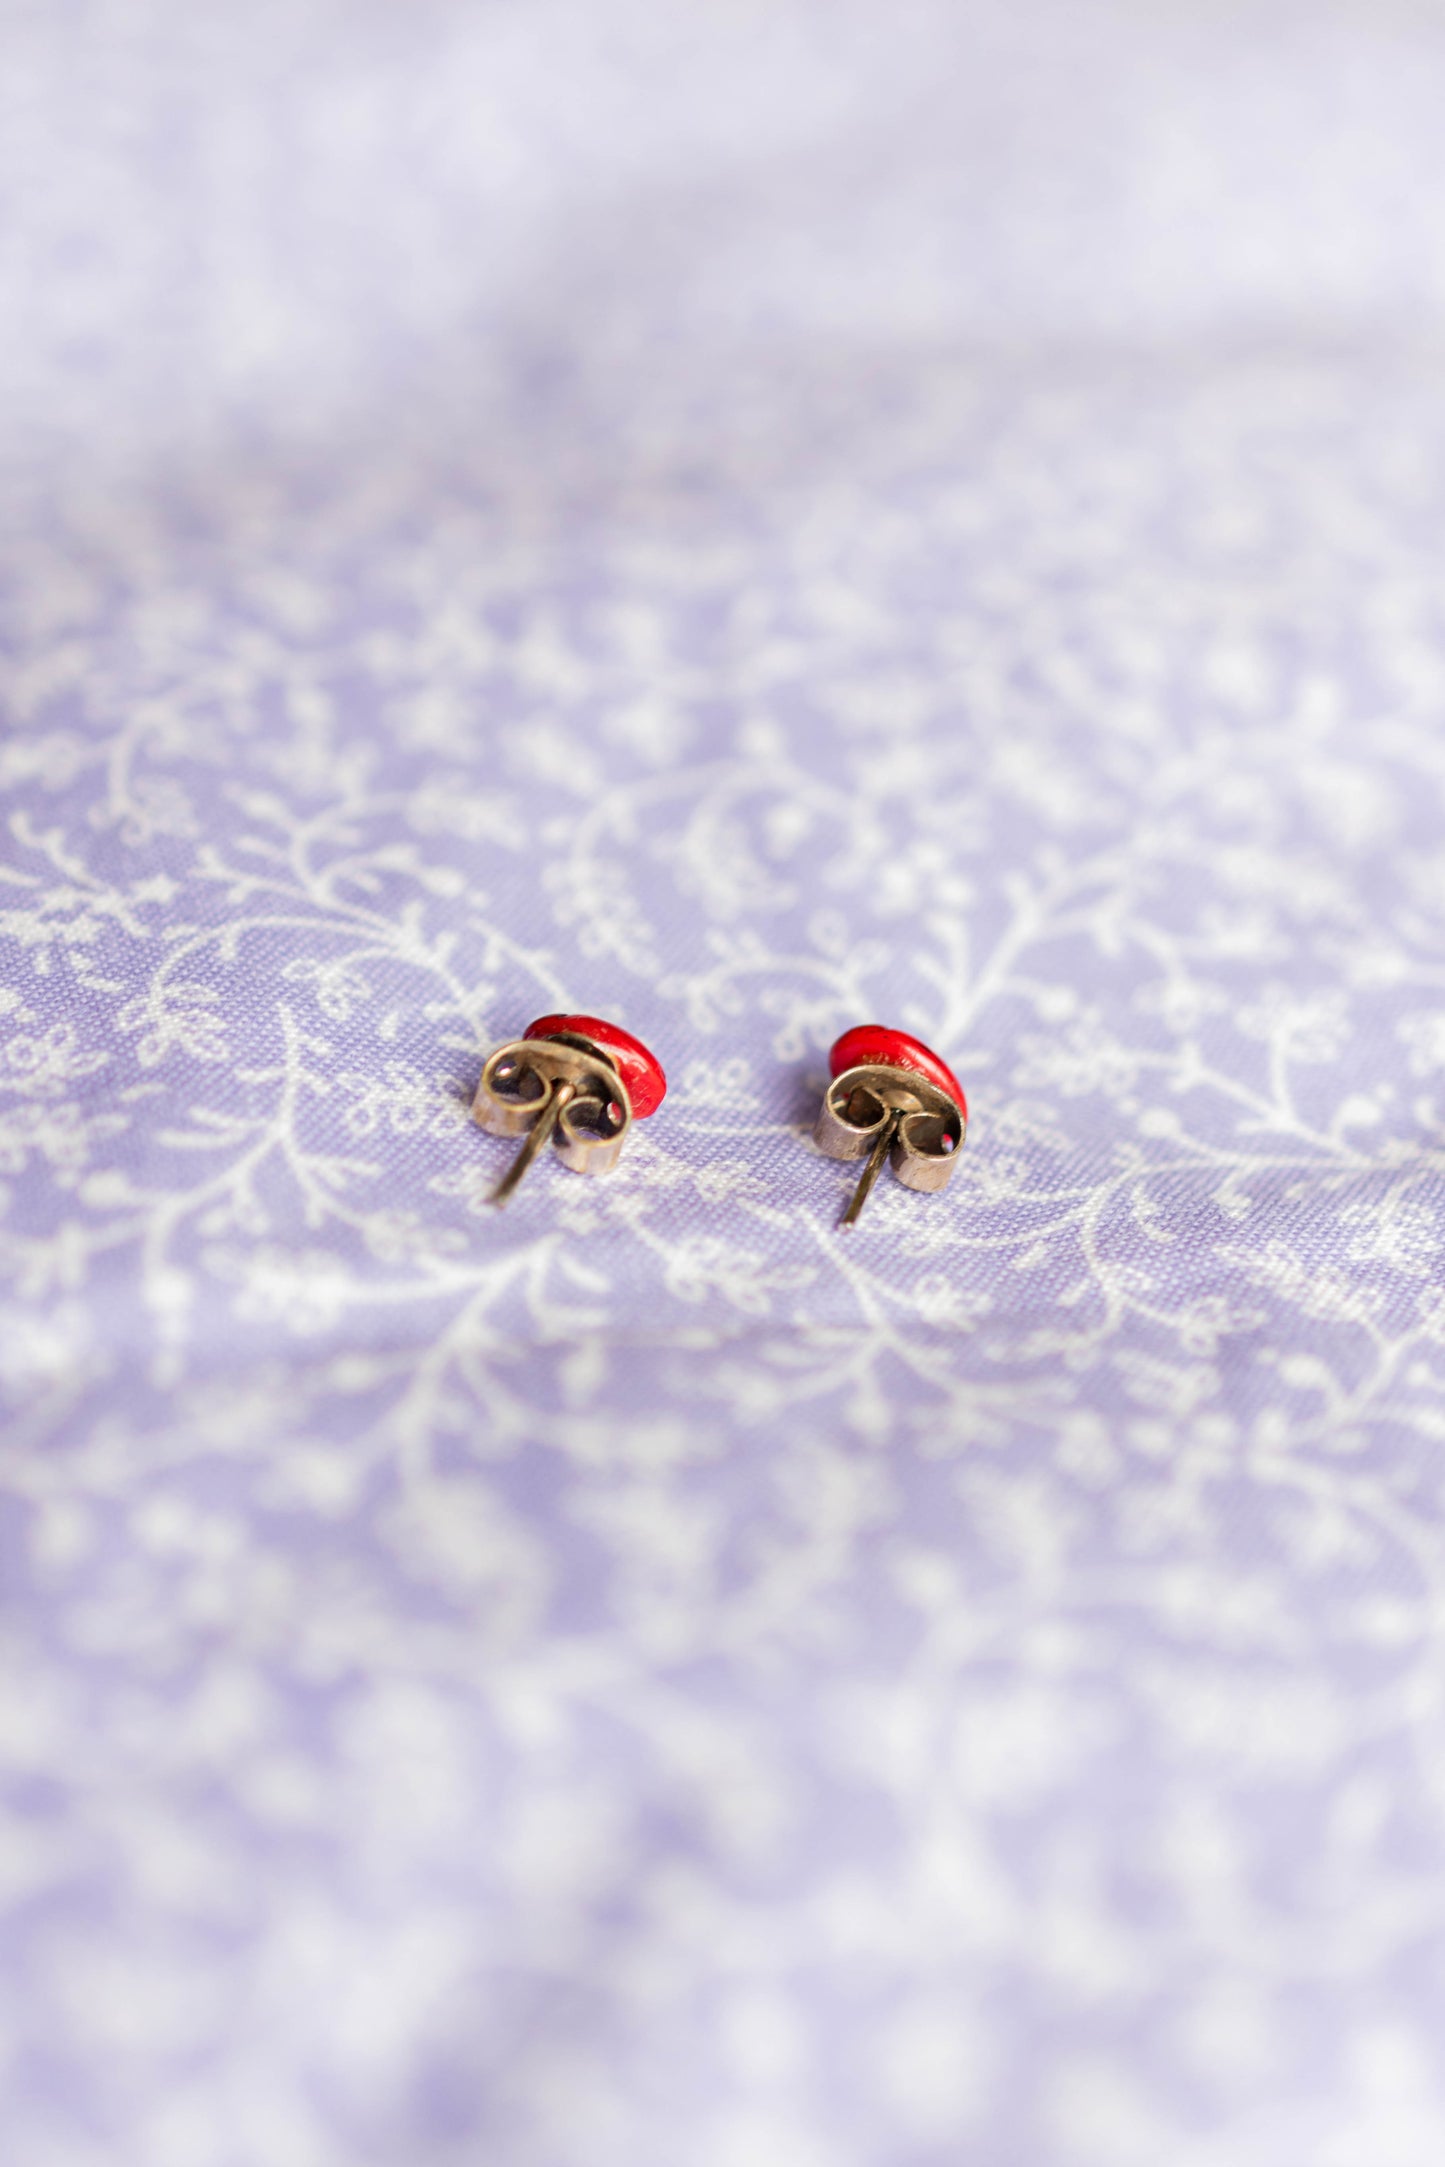 NEW IN! Ladybug earrings